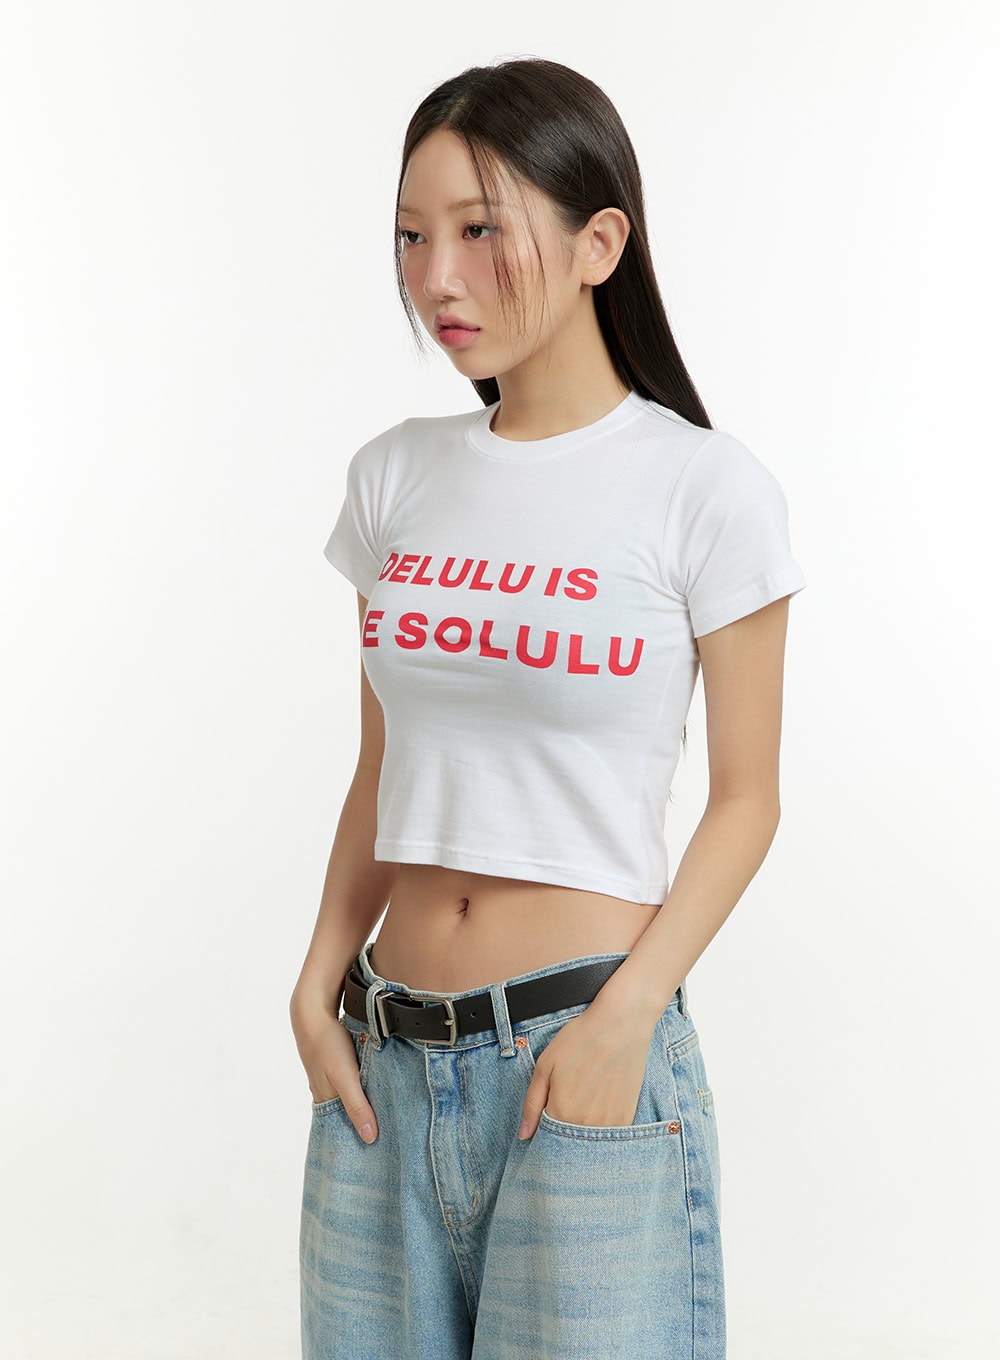 delulu-is-solulu-crop-top-cu428